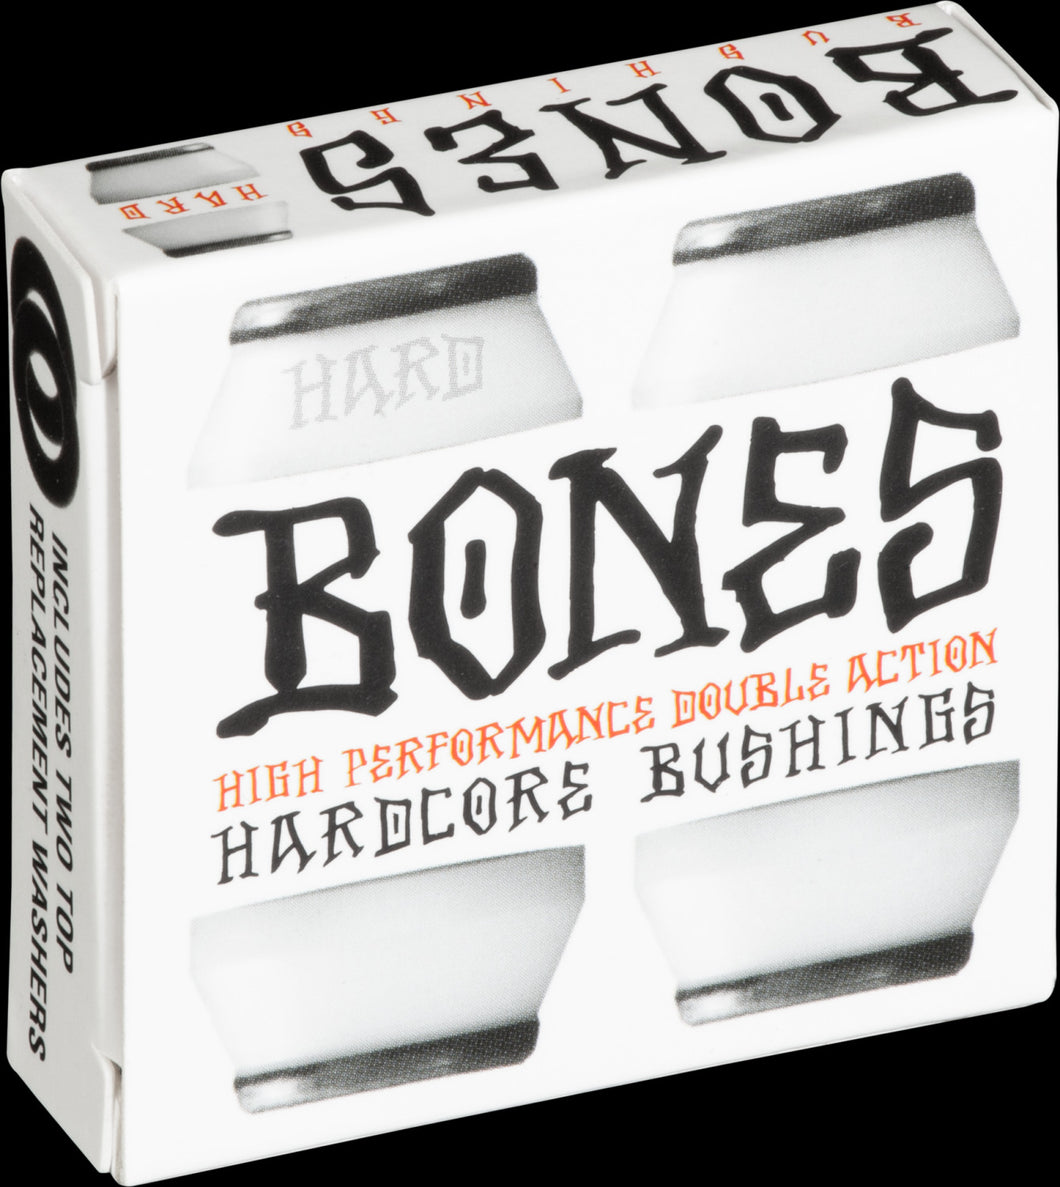 Bones Hard Bushing White